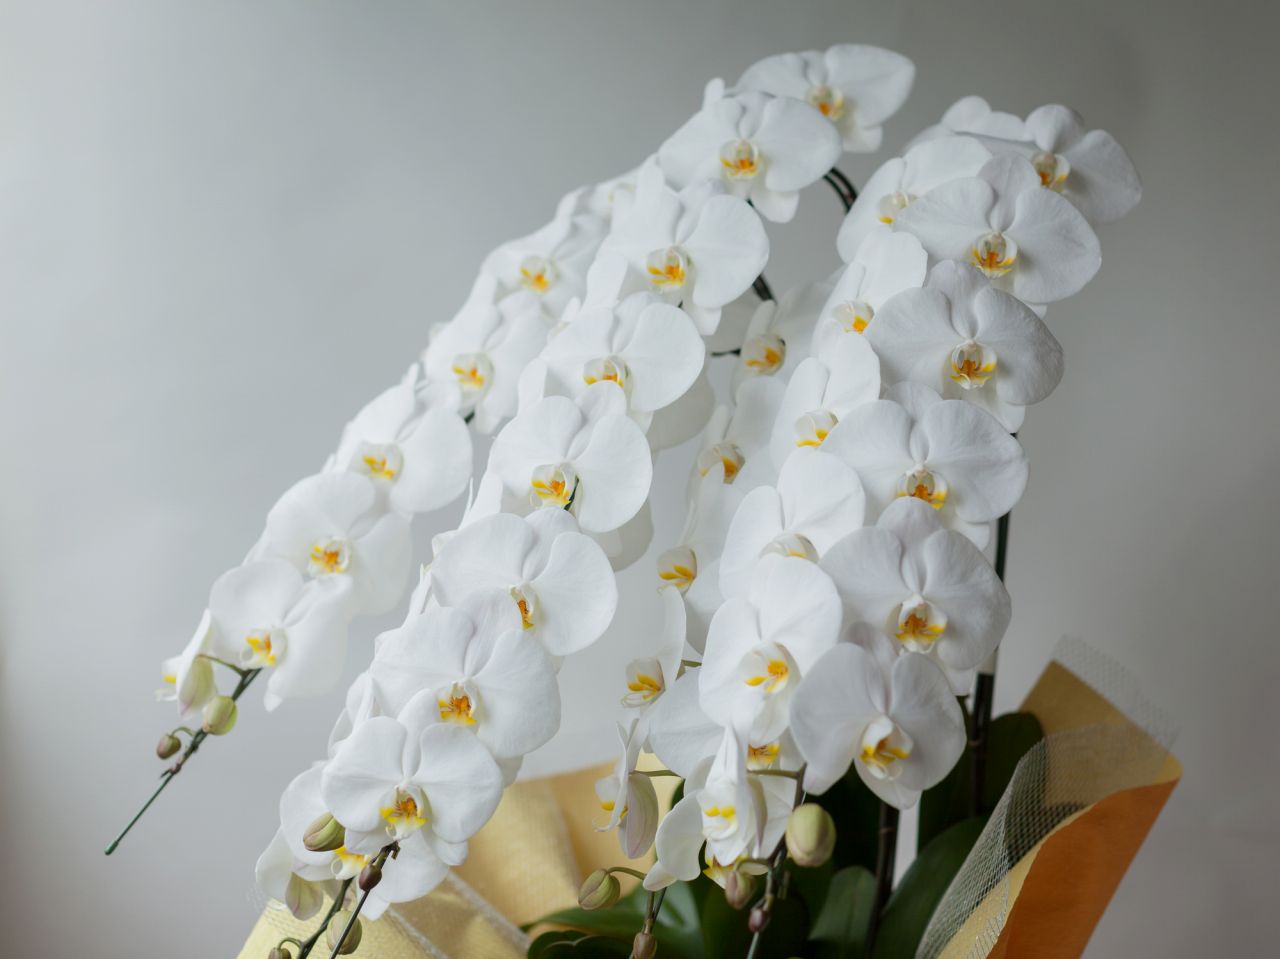 お葬式後の法要で用いる花の手配方法やマナー